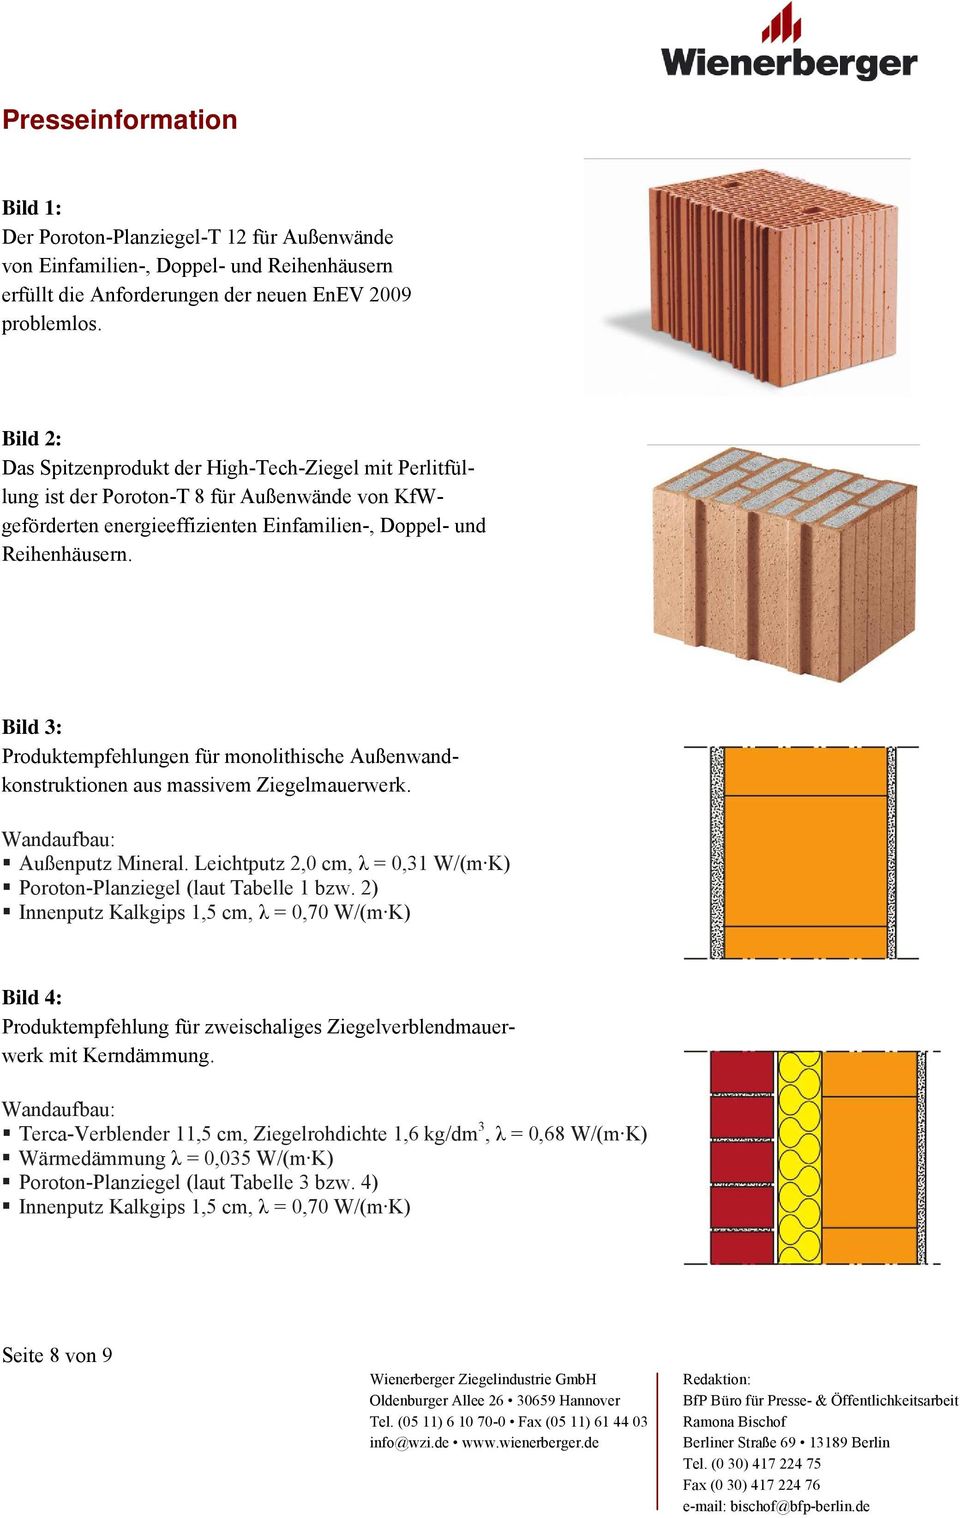 Bild 3: Produktempfehlungen für monolithische Außenwandkonstruktionen aus massivem Ziegelmauerwerk. Außenputz Mineral. Leichtputz 2,0 cm, λ = 0,31 W/(m K) Planziegel (laut Tabelle 1 bzw.